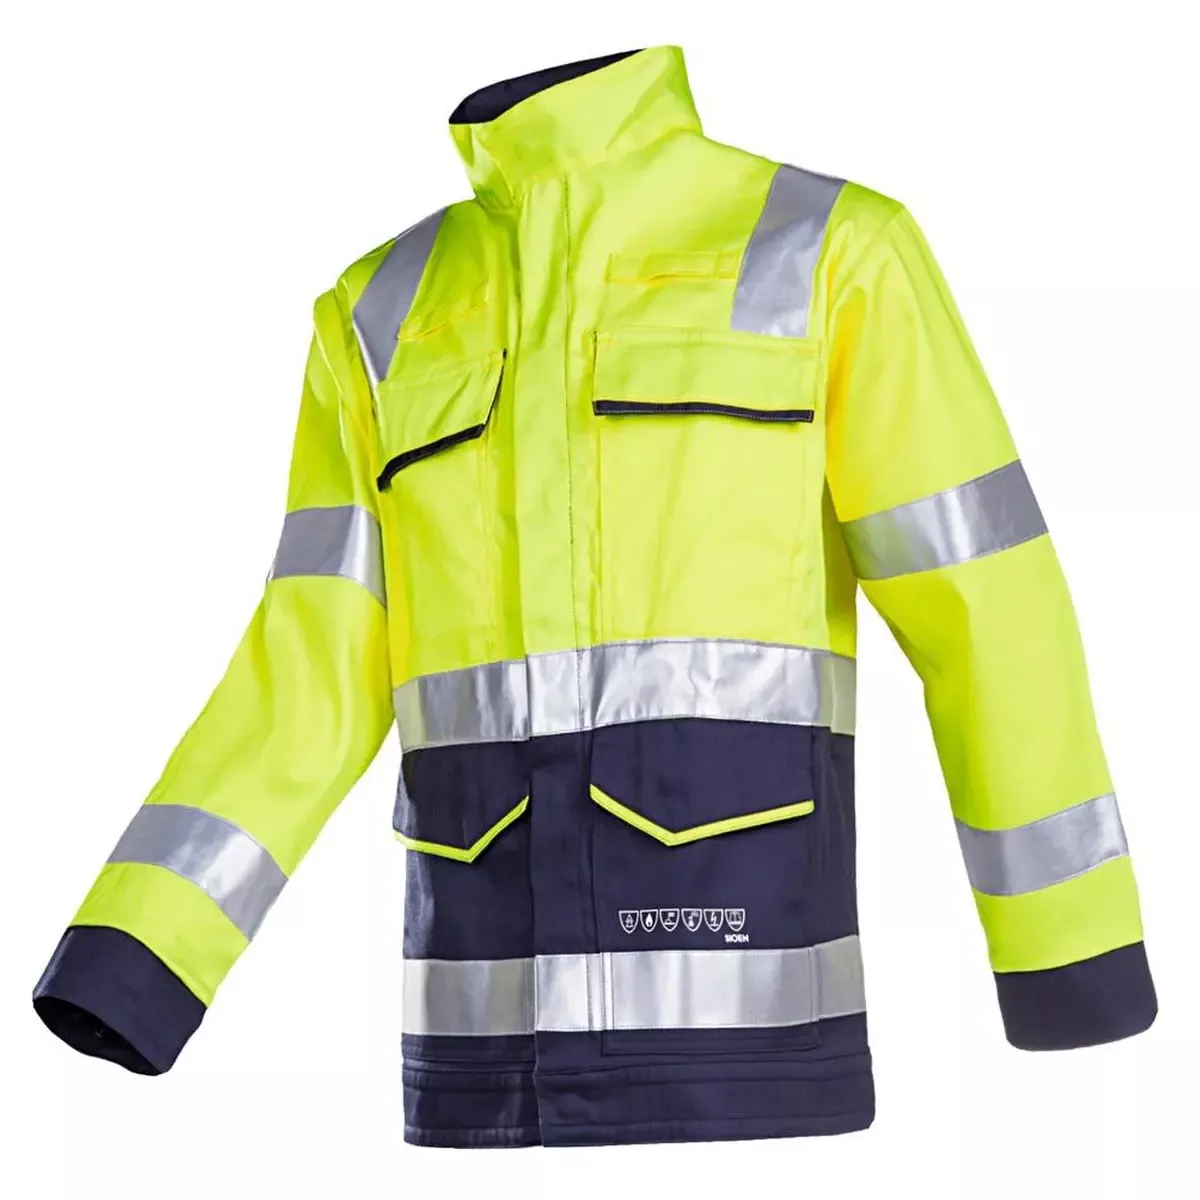 Bekleidung Warnschutz-Jacke m. Störlicht. Millau, Farbe leuchtgelb marine, Gr. 64 für Arbeitssicherheit